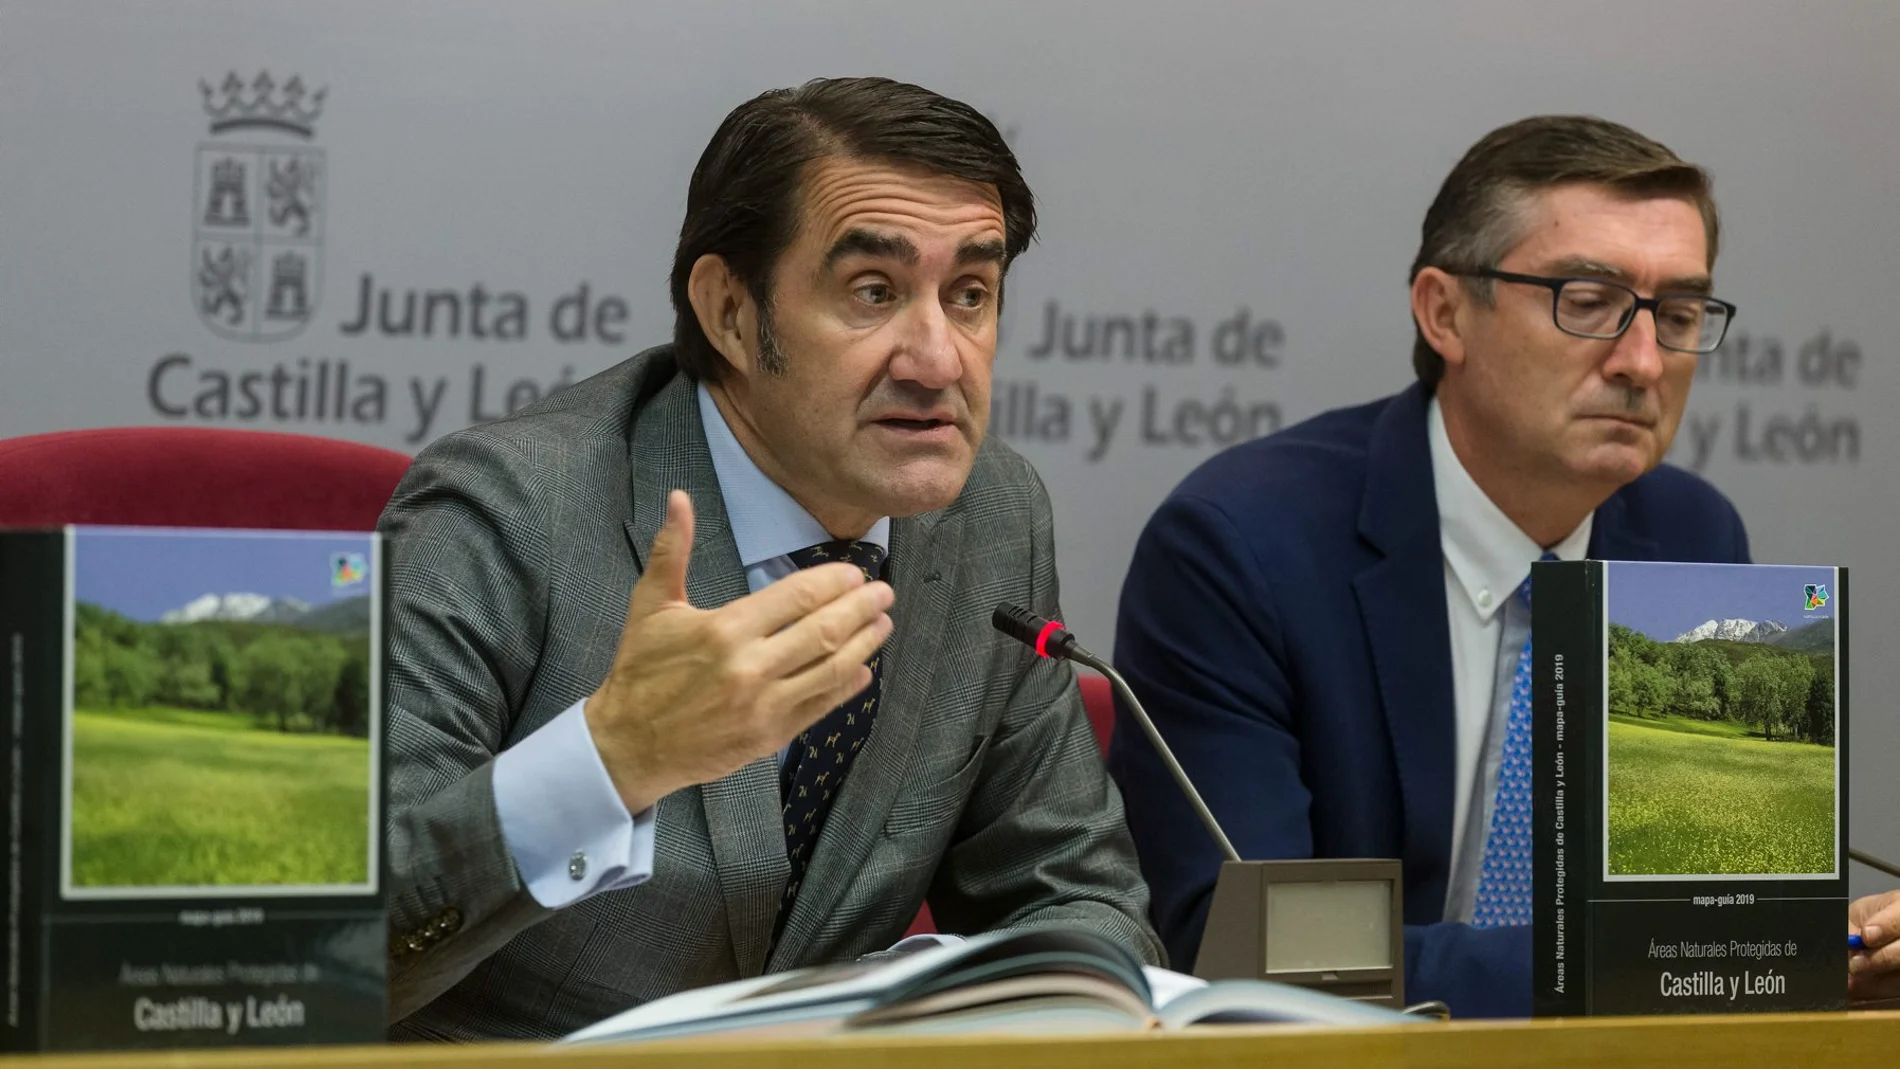 El consejero Juan Carlos Suárez-Quiñones presenta el Libro Mapa-Guía 2019 Áreas Naturales Protegidas de Castilla y León